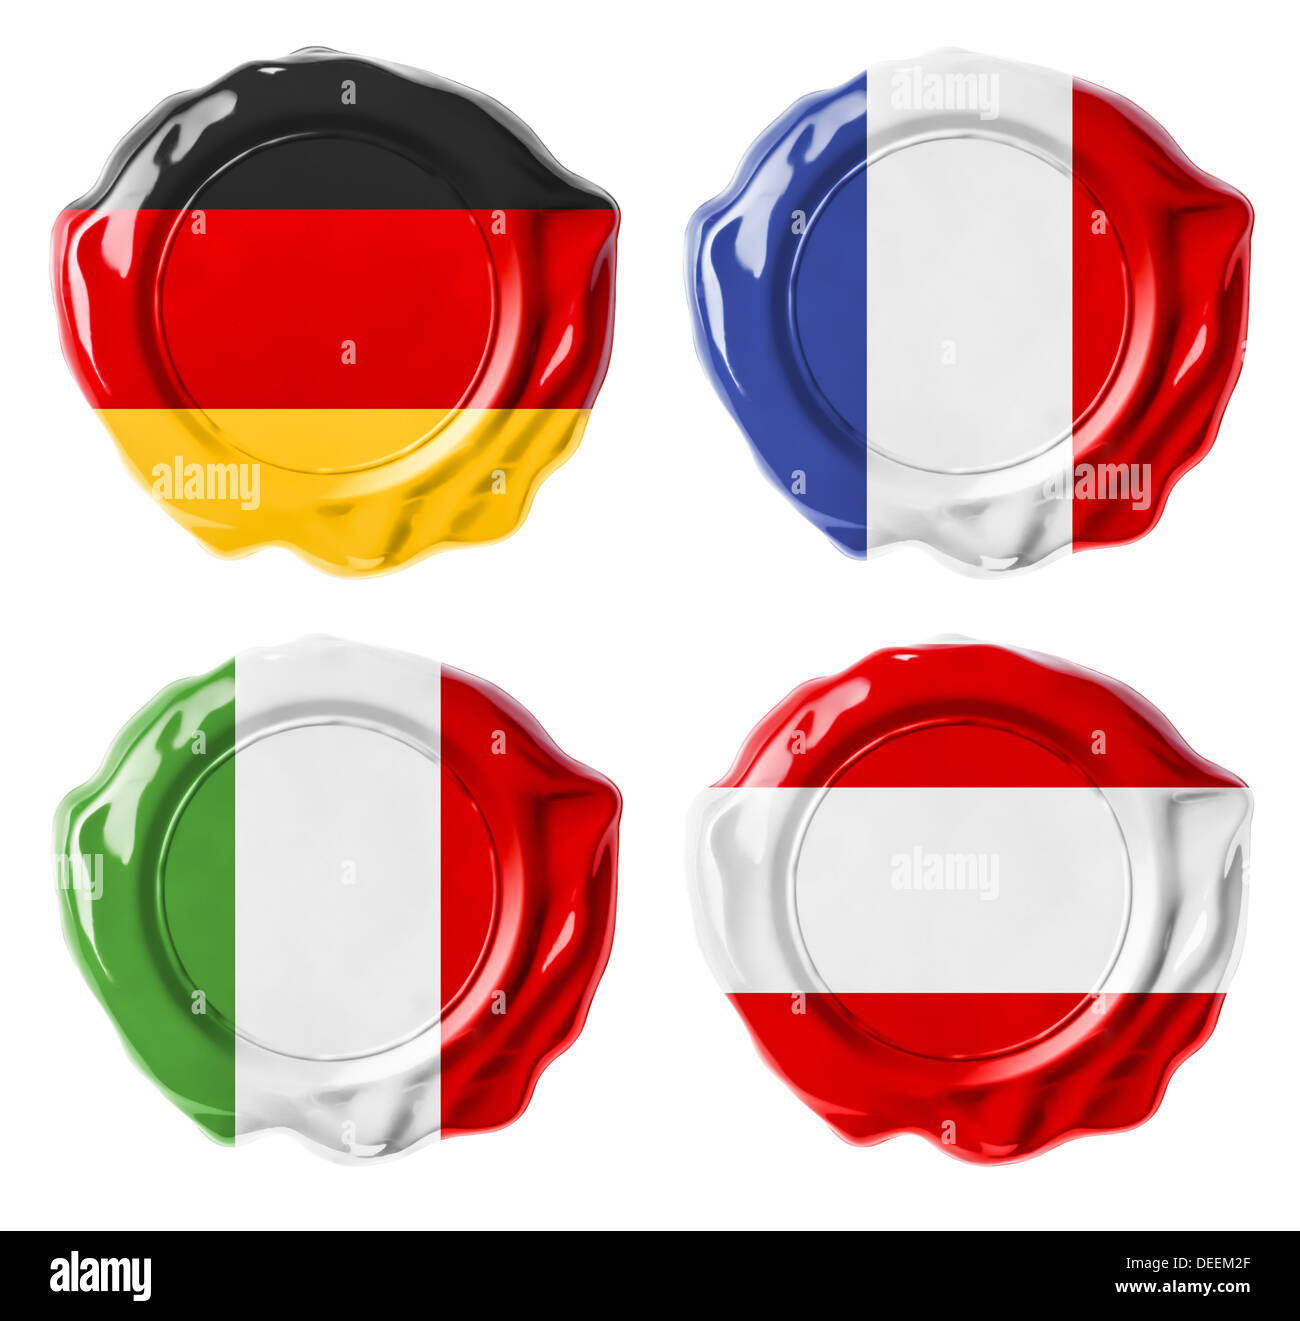 Germania, Francia, Italia, Austria bandiera nazionale sigilli in ceralacca set isolato su bianco Foto Stock